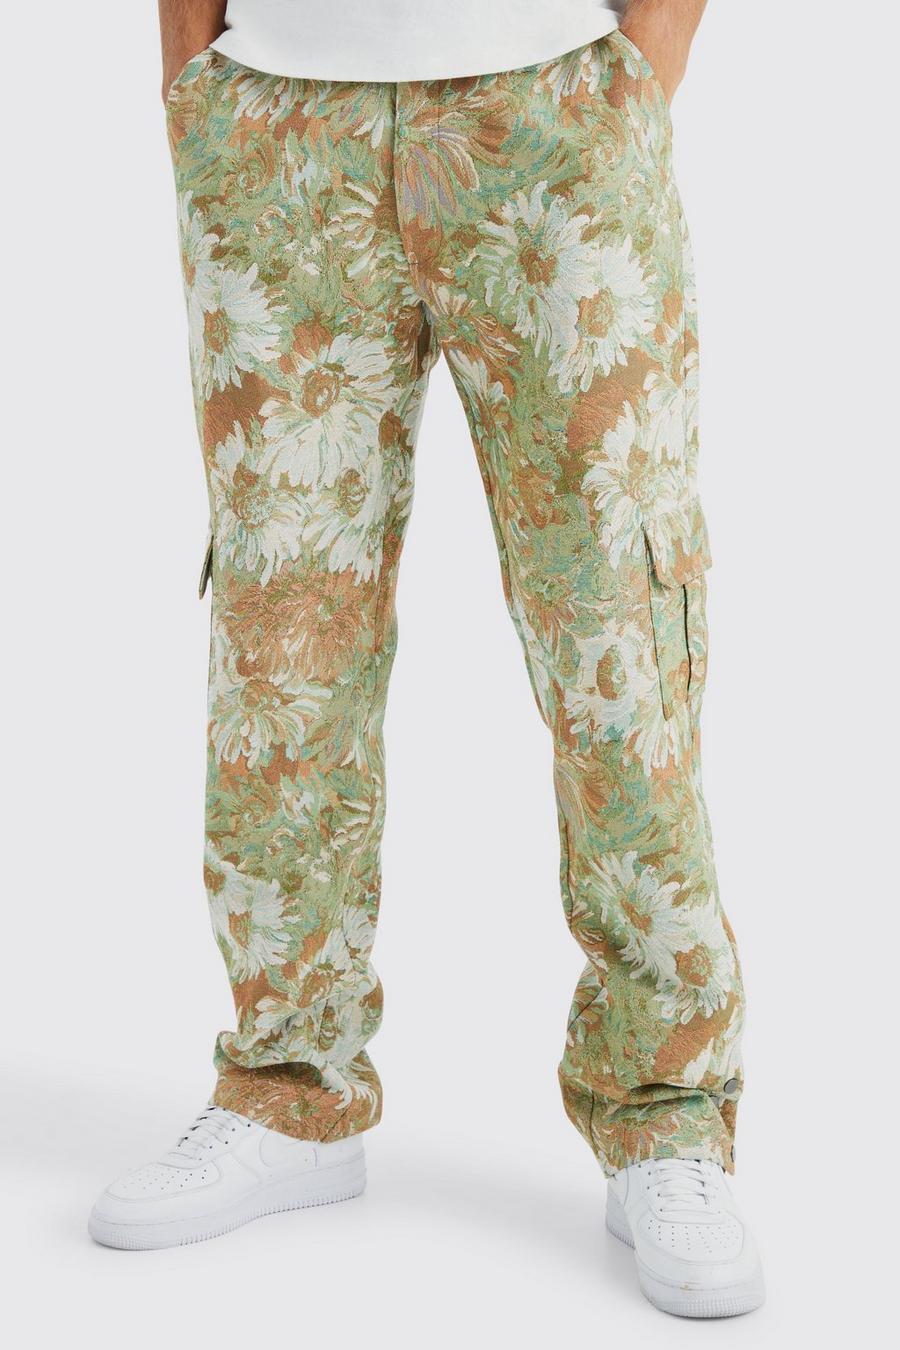 Pantalón Tall holgado con cintura fija, botones de presión en el bajo y estampado de flores estilo tapiz, Sage